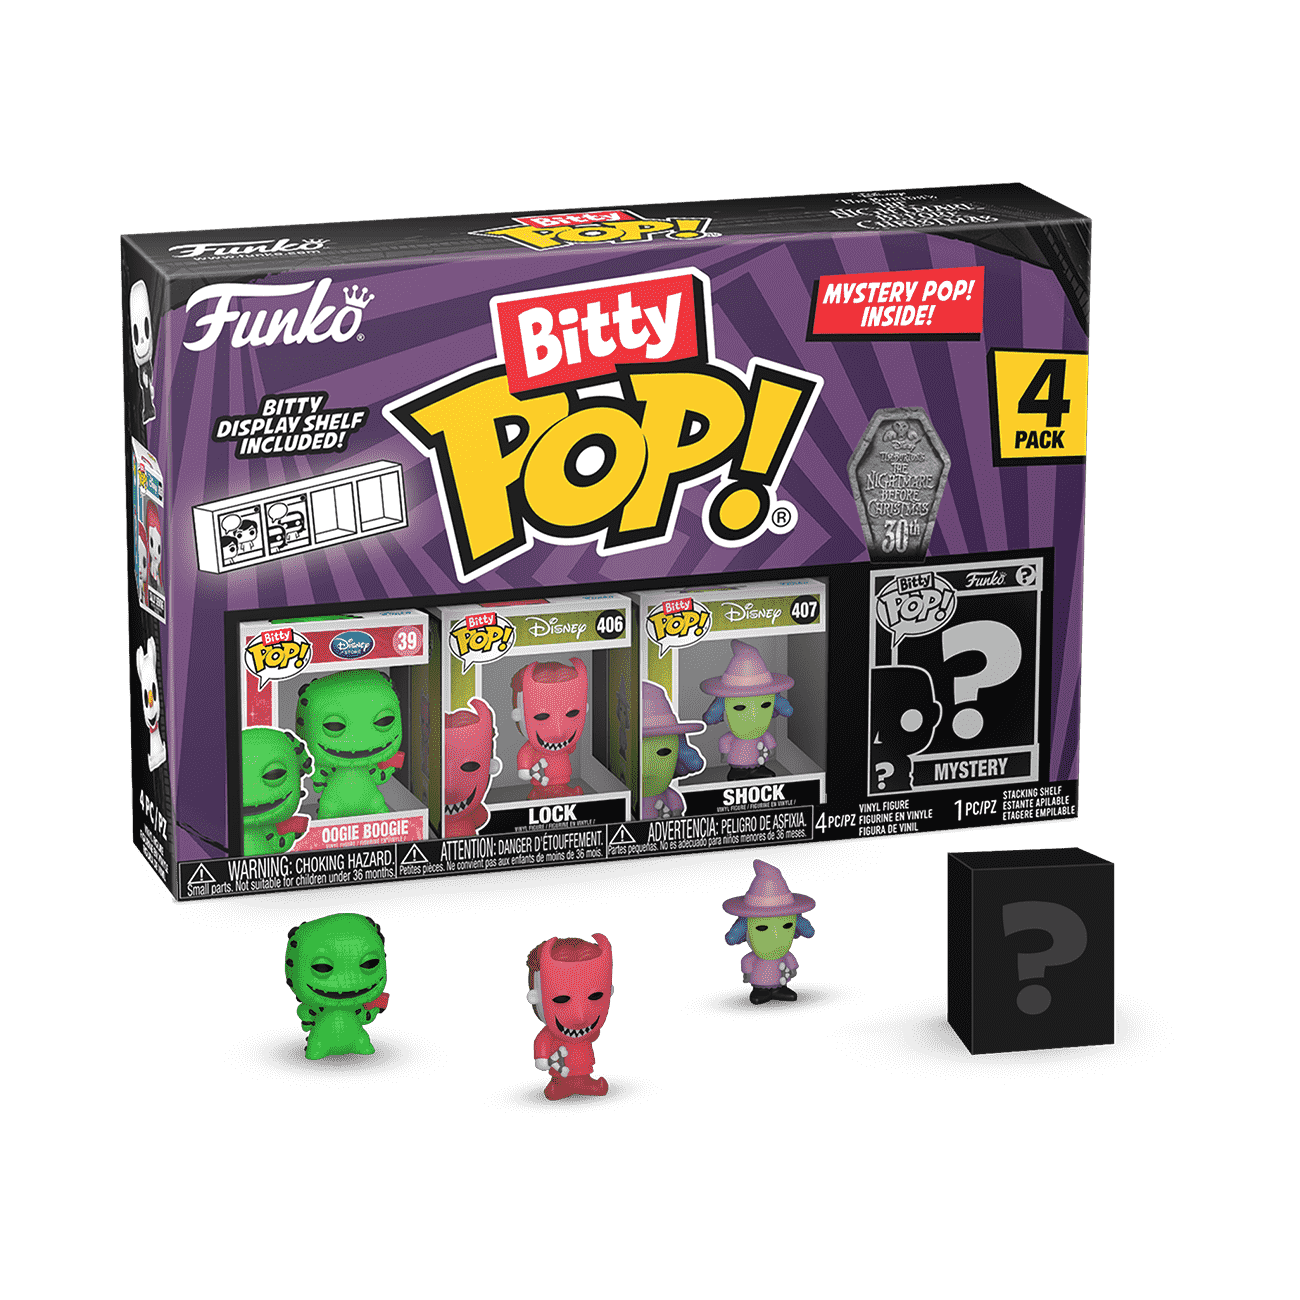  Funko Bitty Pop!: Five Nights at Freddy's Mini